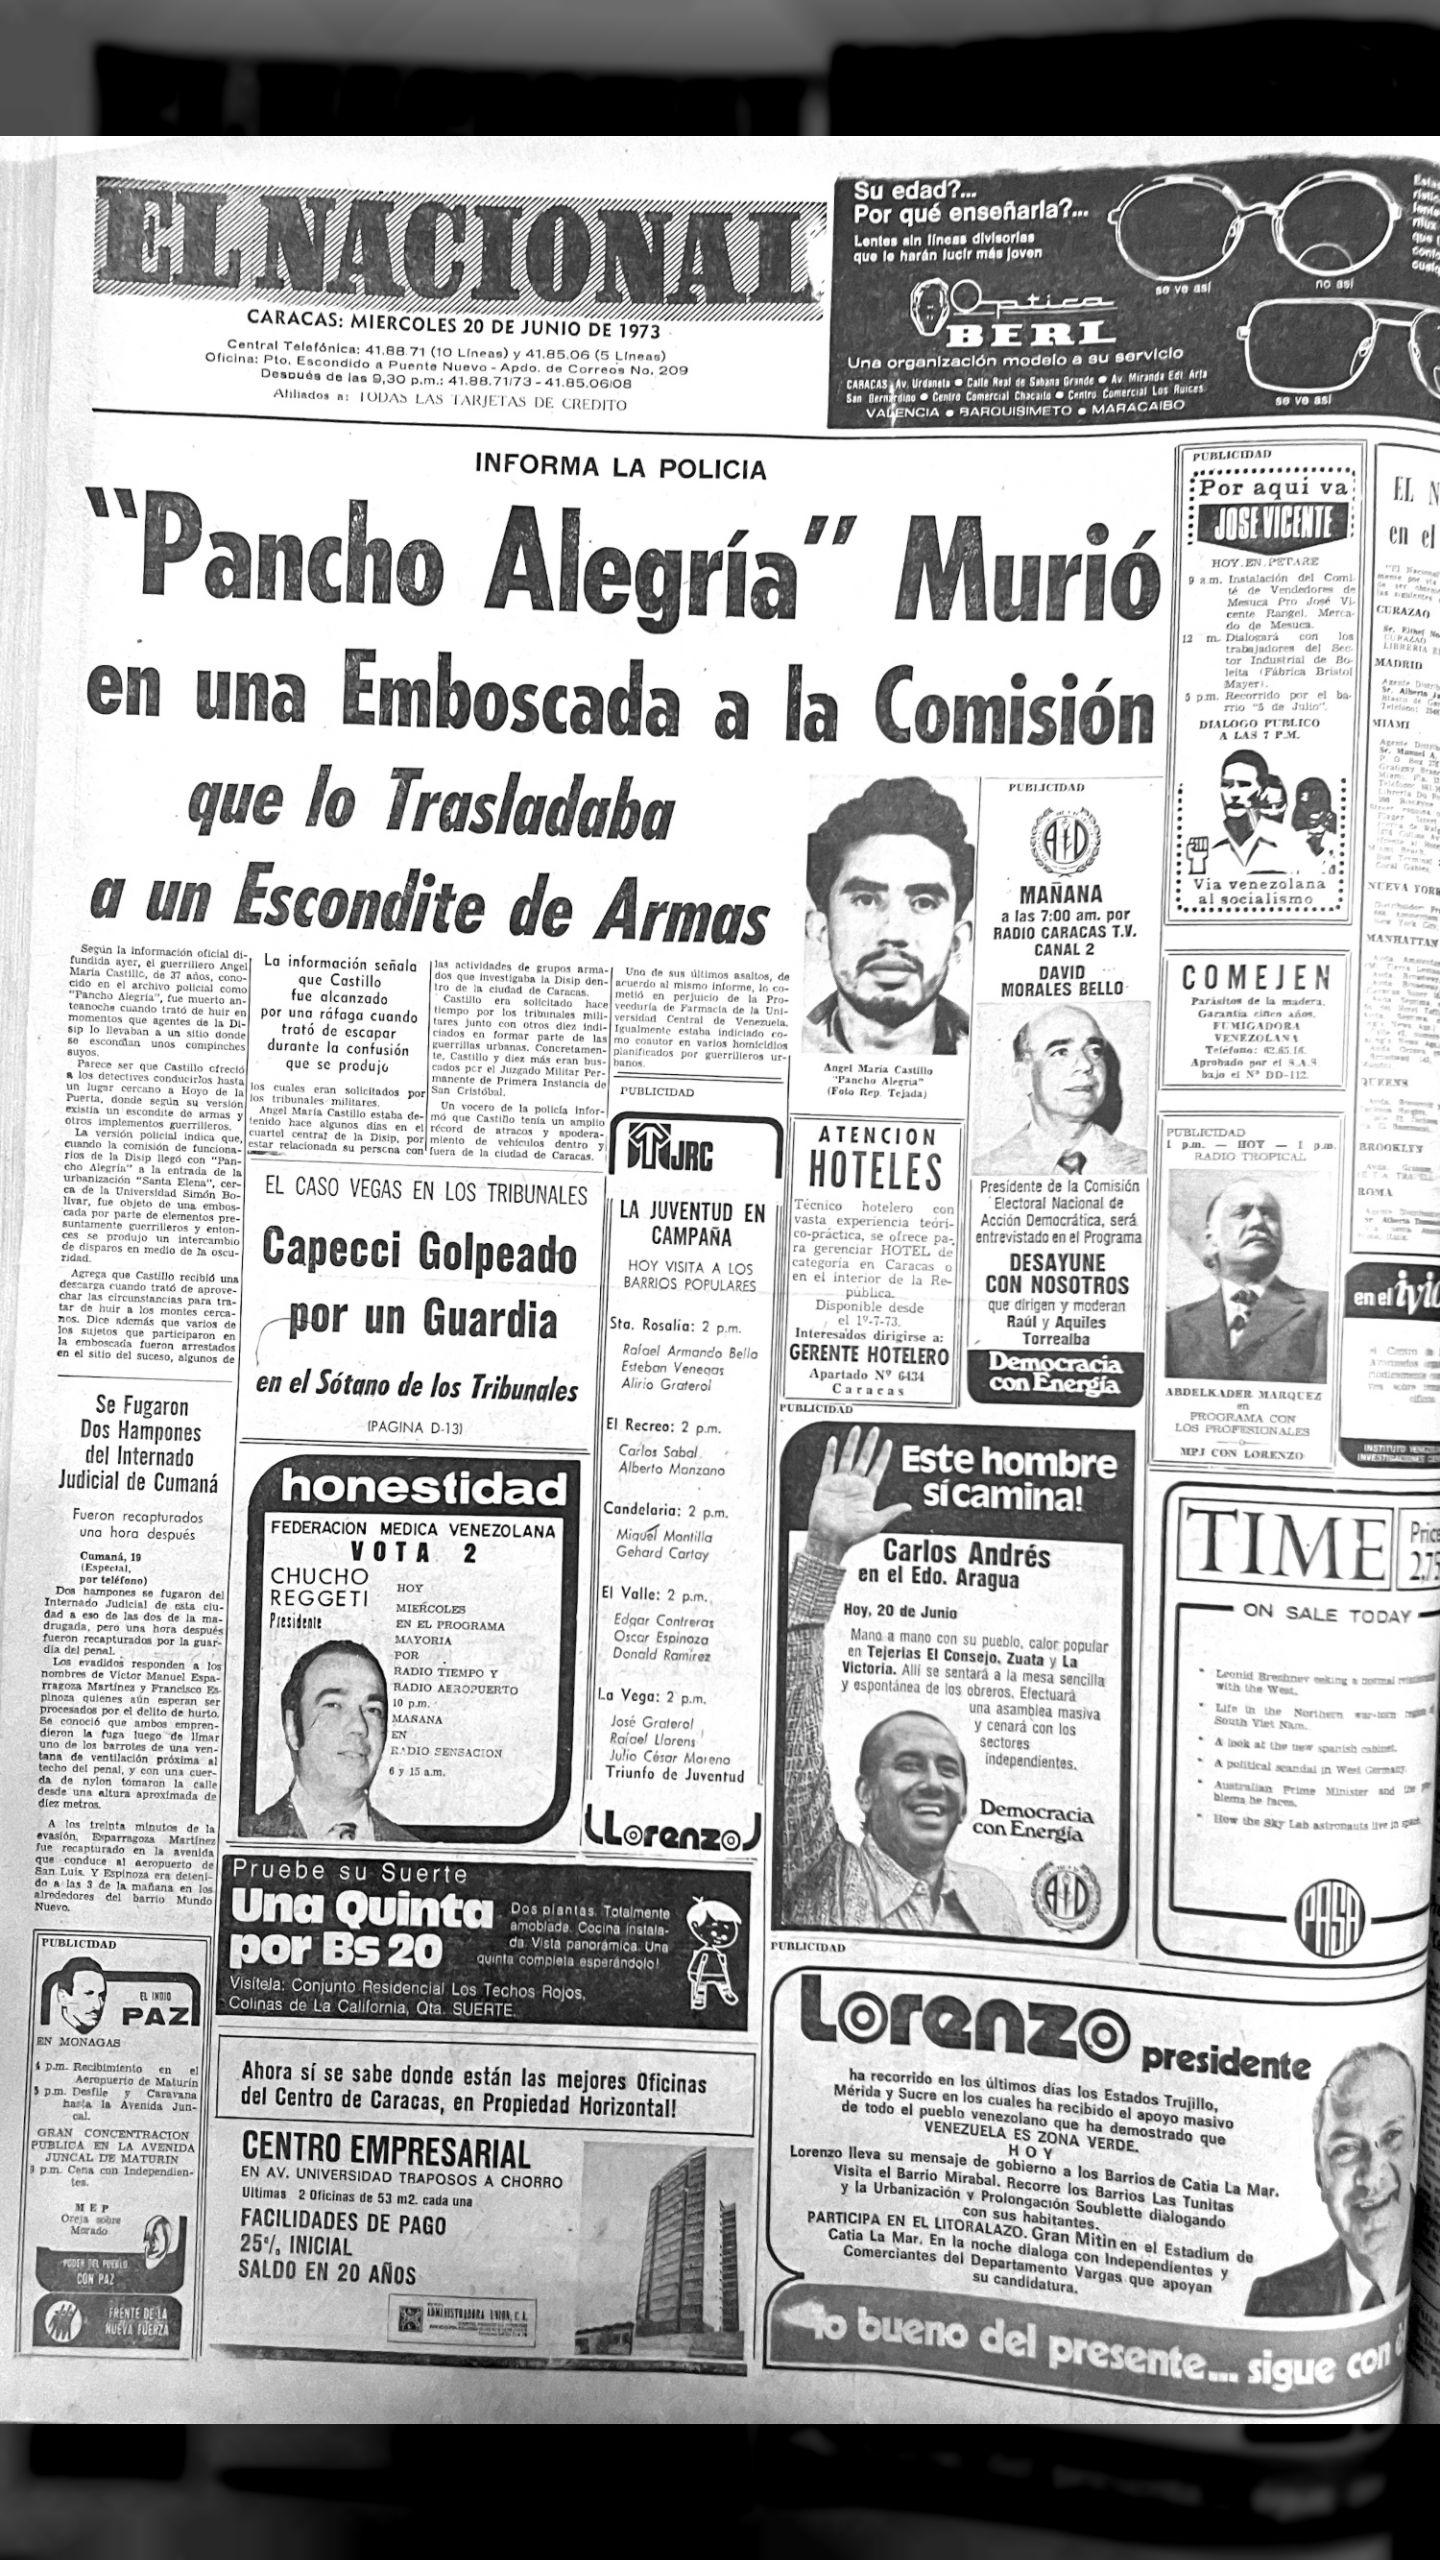 "Pancho Alegría" murió en una emboscada… (El Nacional, 20 de junio 1973)